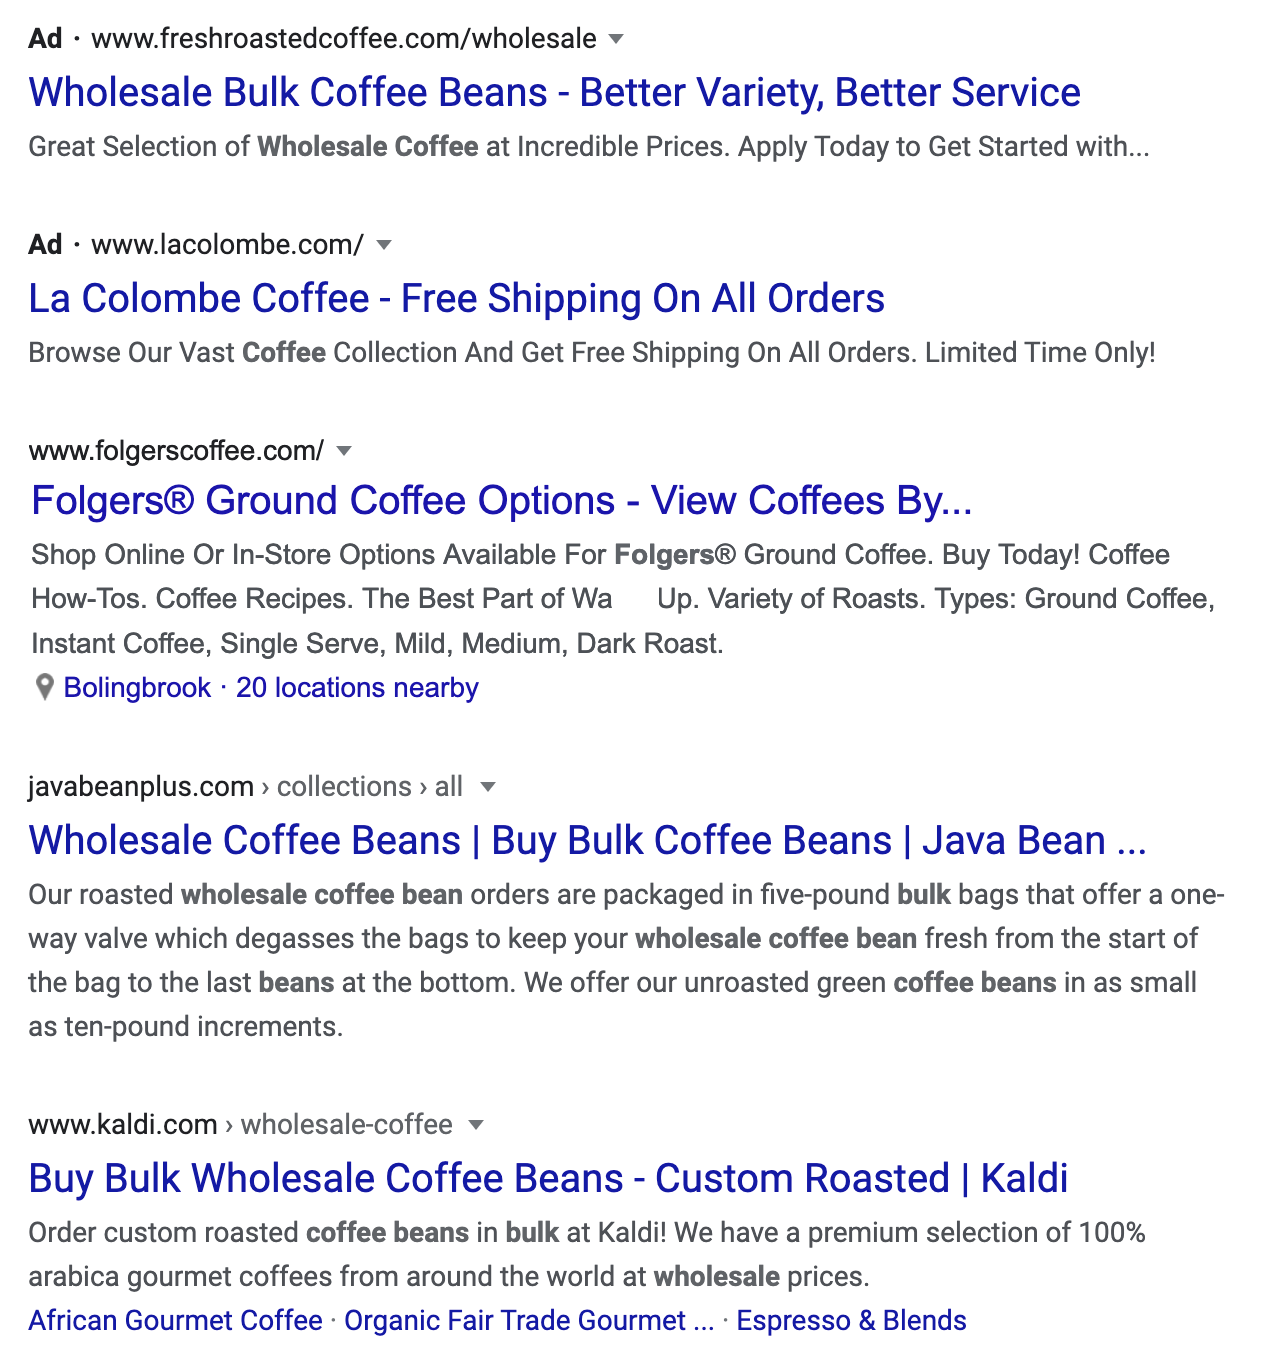 咖啡公司竞争对手的例子